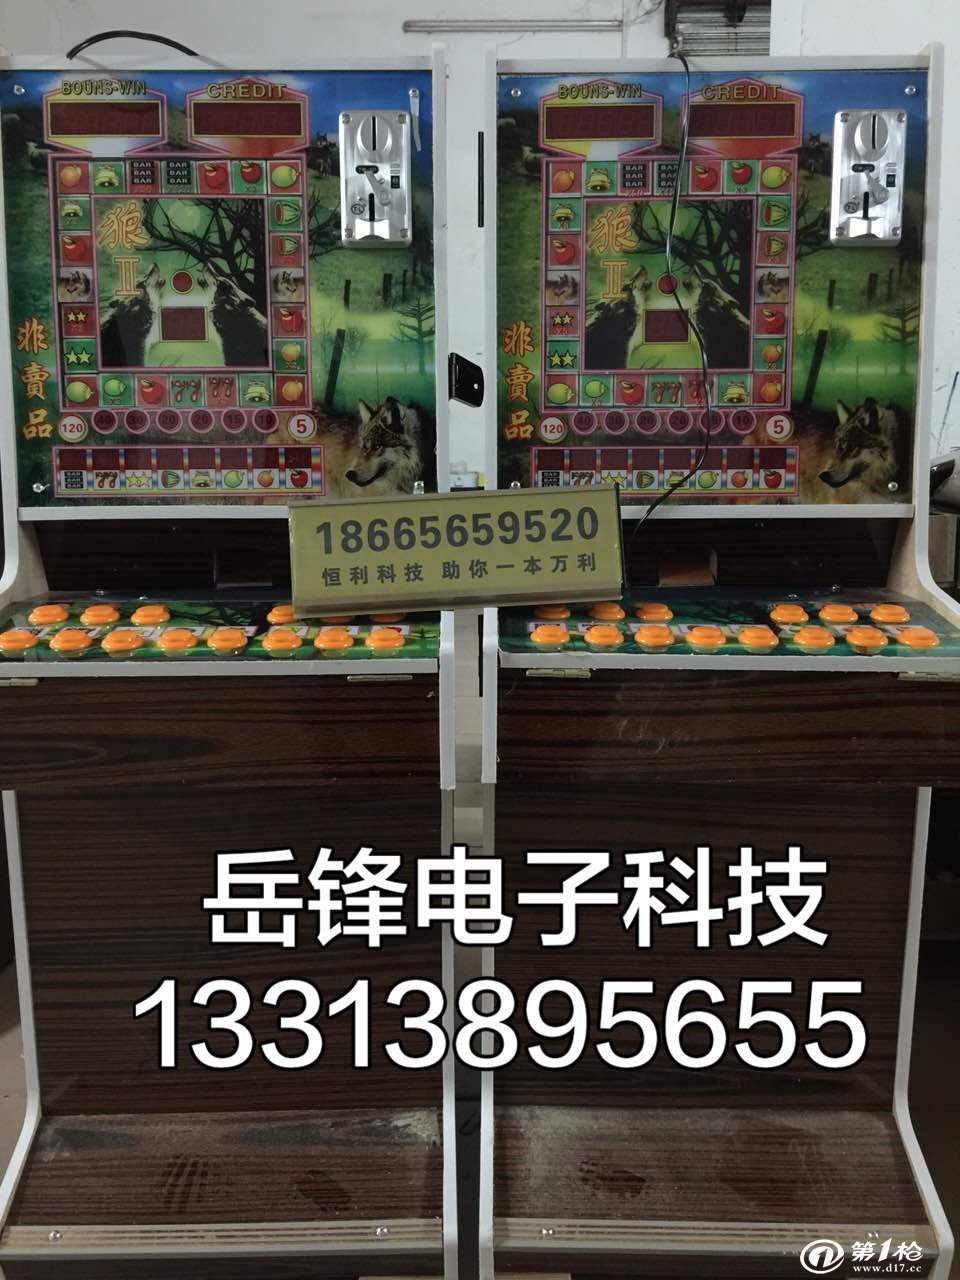 厦门三公机果机批发广州番禺娃娃机投币机风韵喜洋洋水果机厂家